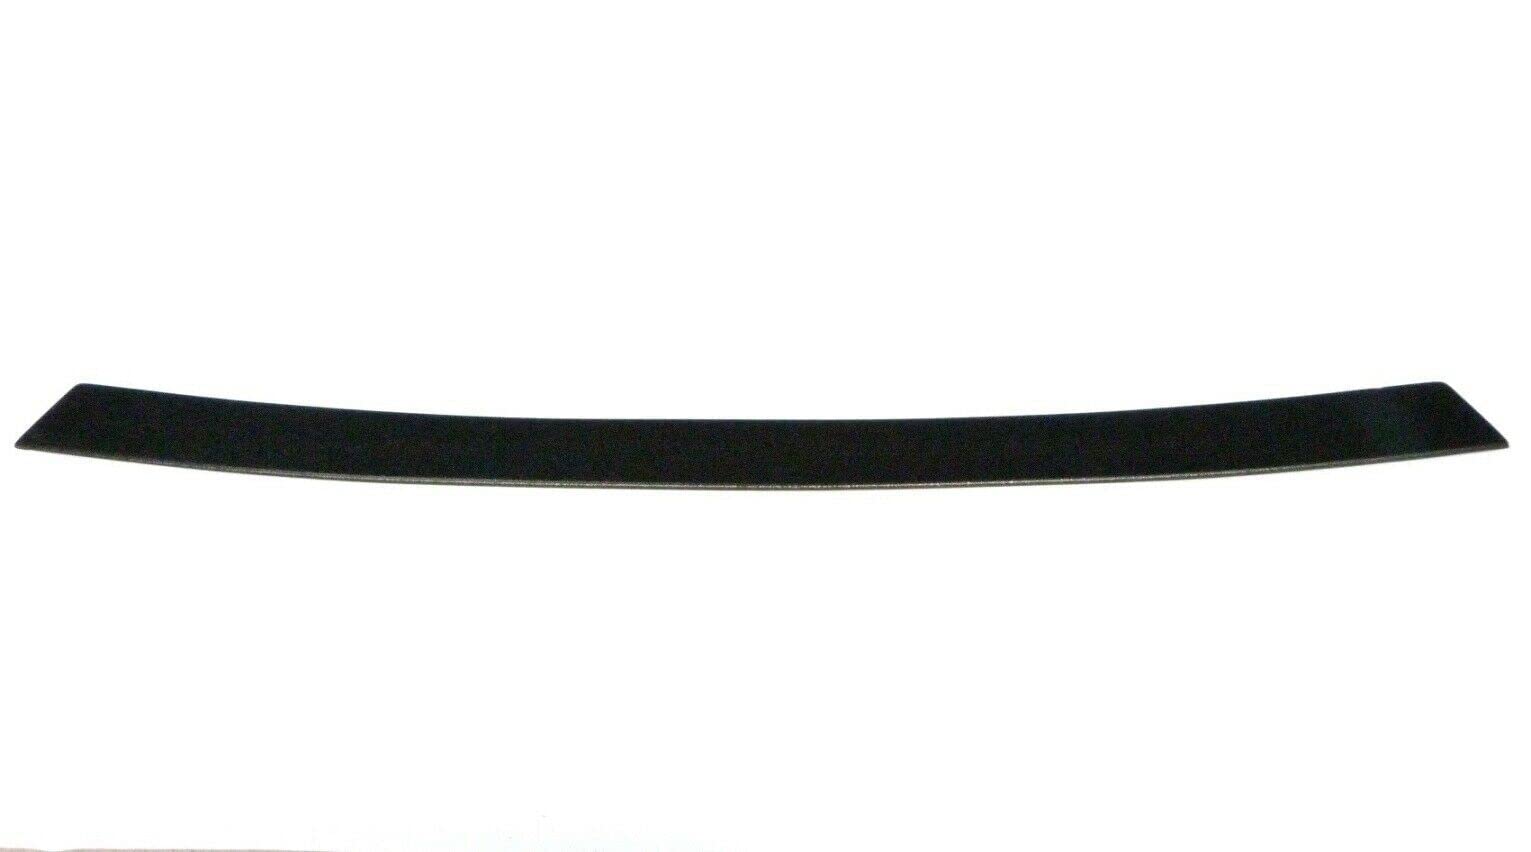 OmniPower® Ladekantenschutz schwarz passend für Hyundai i40 Limousine Typ:VF 2012-2019